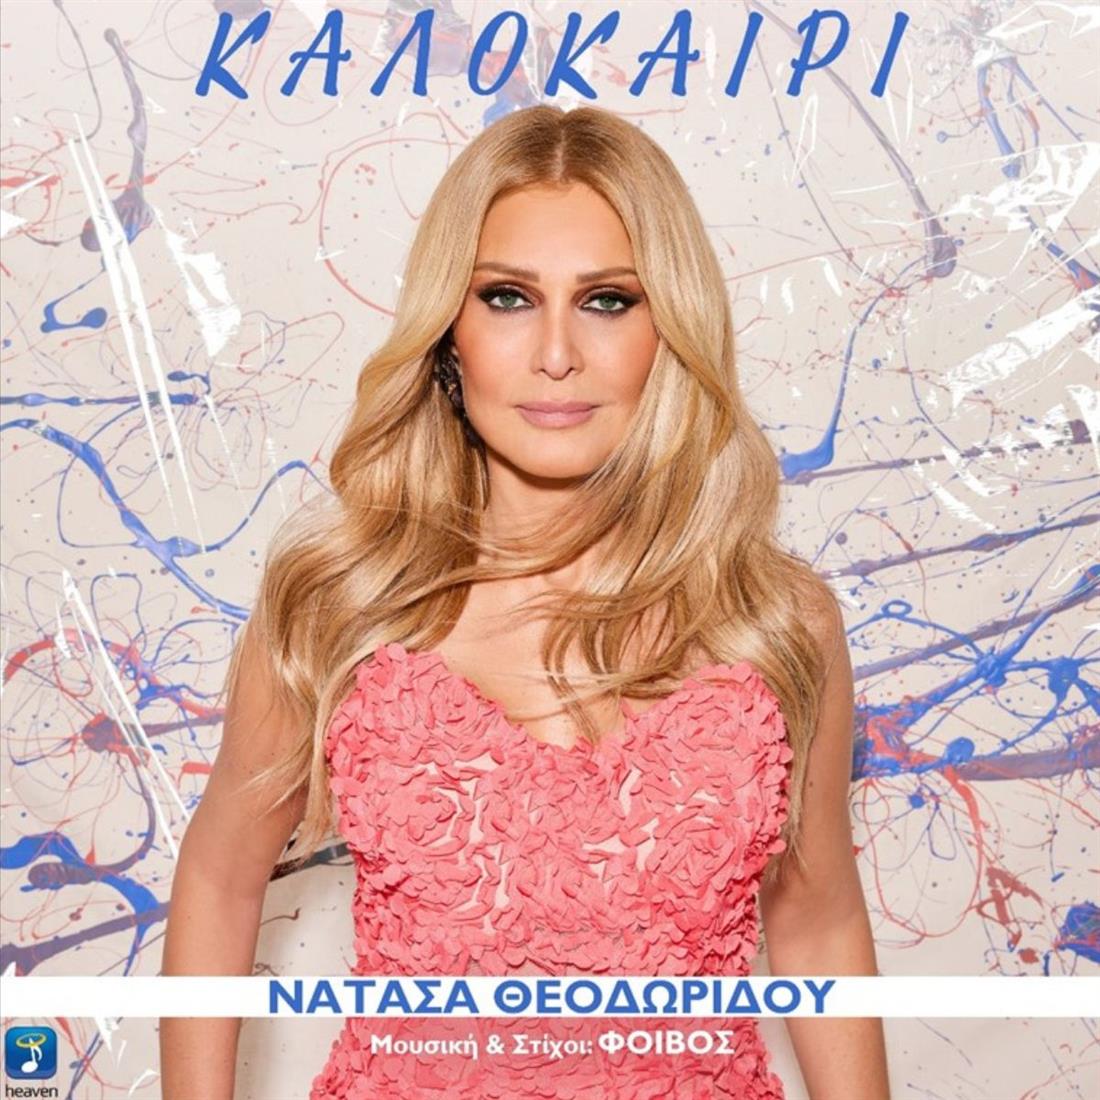 Νατάσα Θεοδωρίδου: Κυκλοφόρησε το νέο της καλοκαιρινό τραγούδι με την Αθηνά Οικονομάκου στο music video!